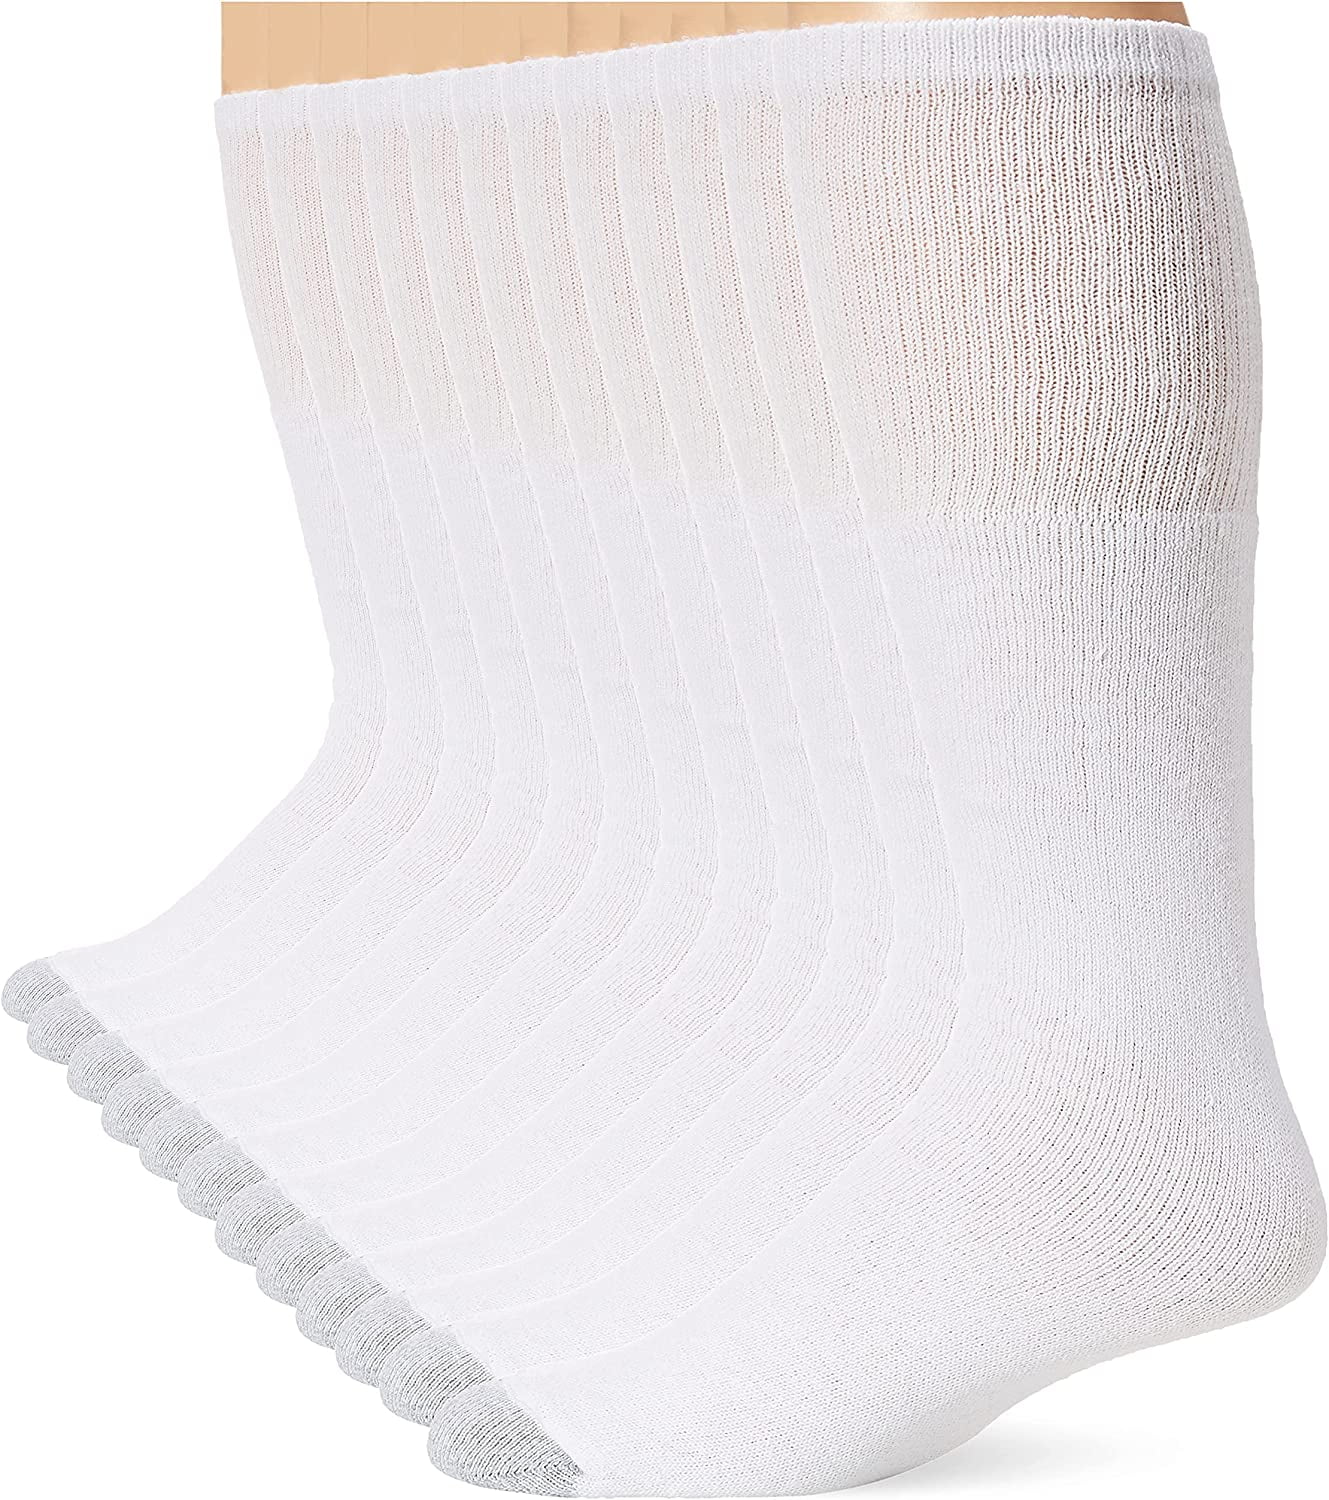 Hanes Men's Over-the-Calf Tube Socks Shoe Sizes 6-12 (24 Pack) 